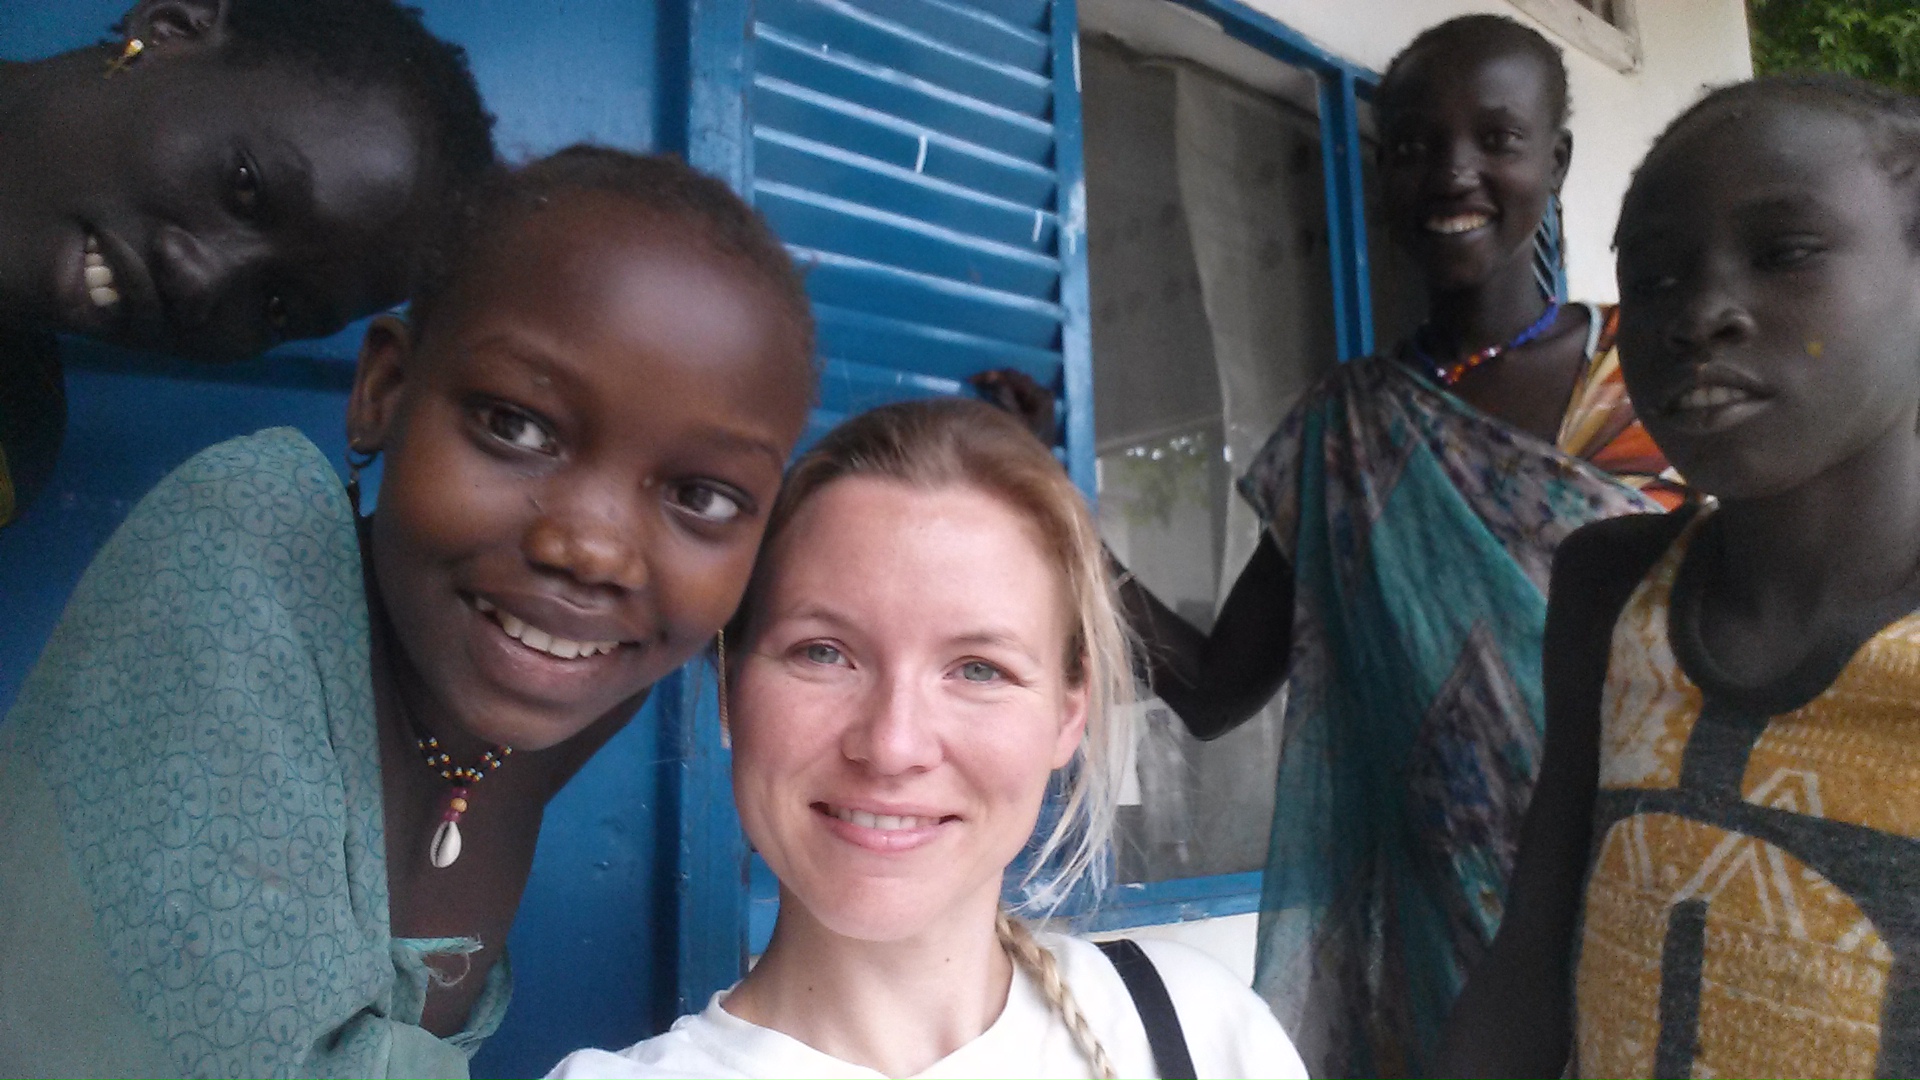 Heidi werkte als verpleegkundige in ons project in Pibor, Zuid-Soedan. Op een dag werd een jong meisje binnengebracht. Ze was gebeten door een slang in de voet:   "Haar voet was helemaal dood, er was geen bloedtoevoer meer en haar voet was geïnfecteerd. Haar huid was ook volledig beschadigd tot aan de knie, je je kon de spier zien. Het meisje was pas twaalf jaar oud. Helaas kwam ze, net als zo velen, te laat naar de kliniek. We hadden geen andere keuze dan haar voet te amputeren om haar leven te redden. Gelukkig deed het meisje het goed, maar haar leven zal nooit meer hetzelfde zijn. Het is vreselijk om te zien hoeveel schade slangenbeten hier in Zuid-Soedan aanrichten, maar ik ben in ieder geval blij dat we het leven van het meisje hebben gered.  Het wordt hoog tijd dat we slangenbeten op de agenda zetten, zowel door gezondheidsautoriteiten, de farmaceutische industrie als andere actoren.  Had ze op tijd de nodige zorg en de nodige medicatie gekregen, had ze vandaag haar voet nog.